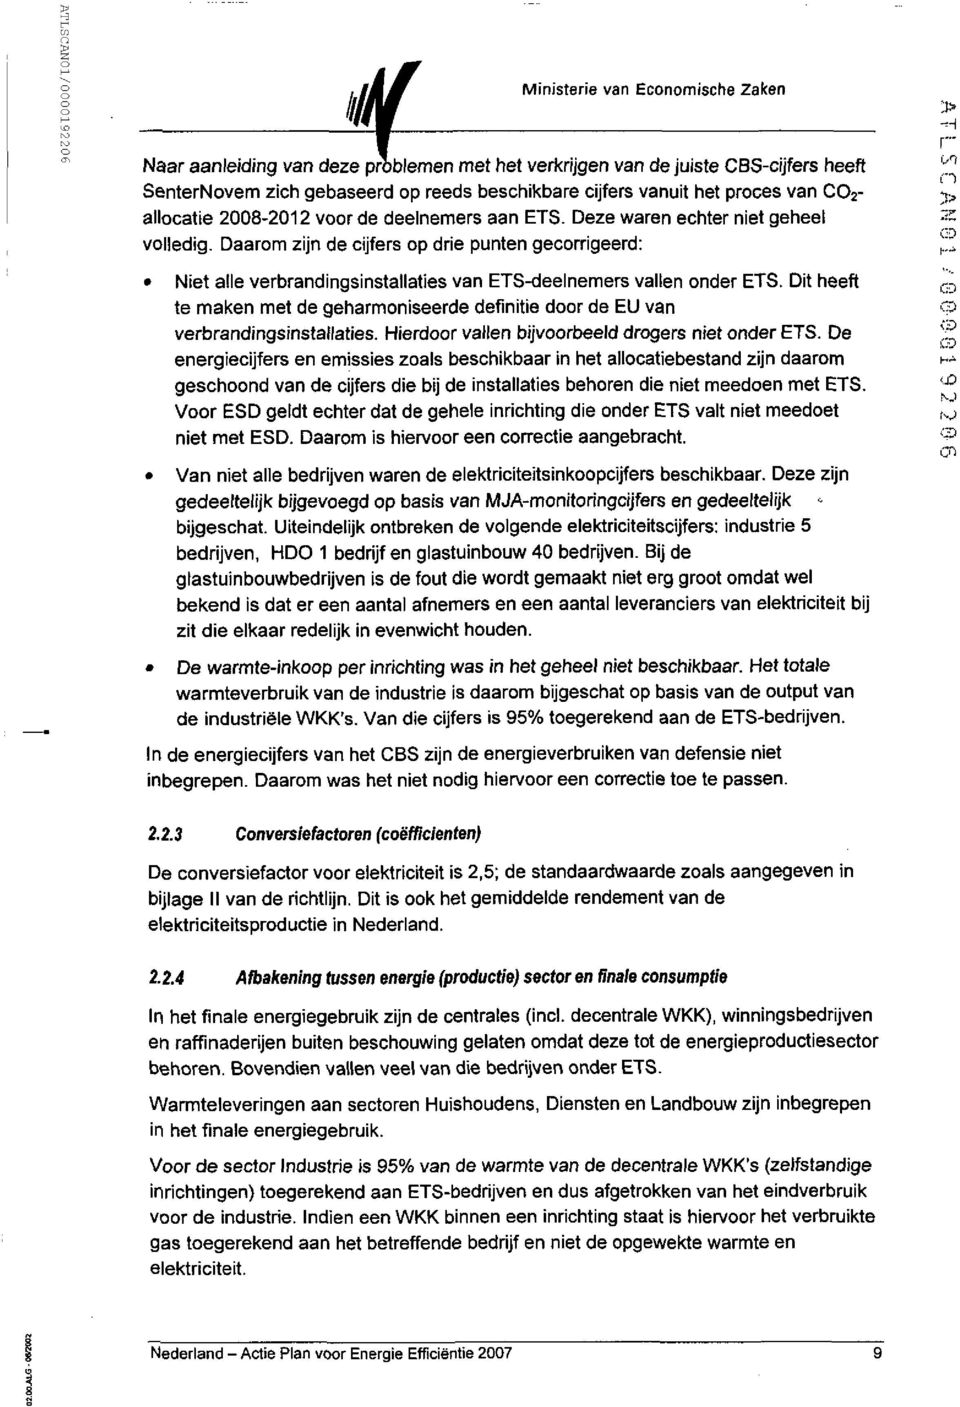 Dit heeft ^ te maken met de geharmoniseerde definitie door de EU van P verbrandingsinstallaties. Hierdoor vallen bijvoorbeeld drogers niet onder ETS.